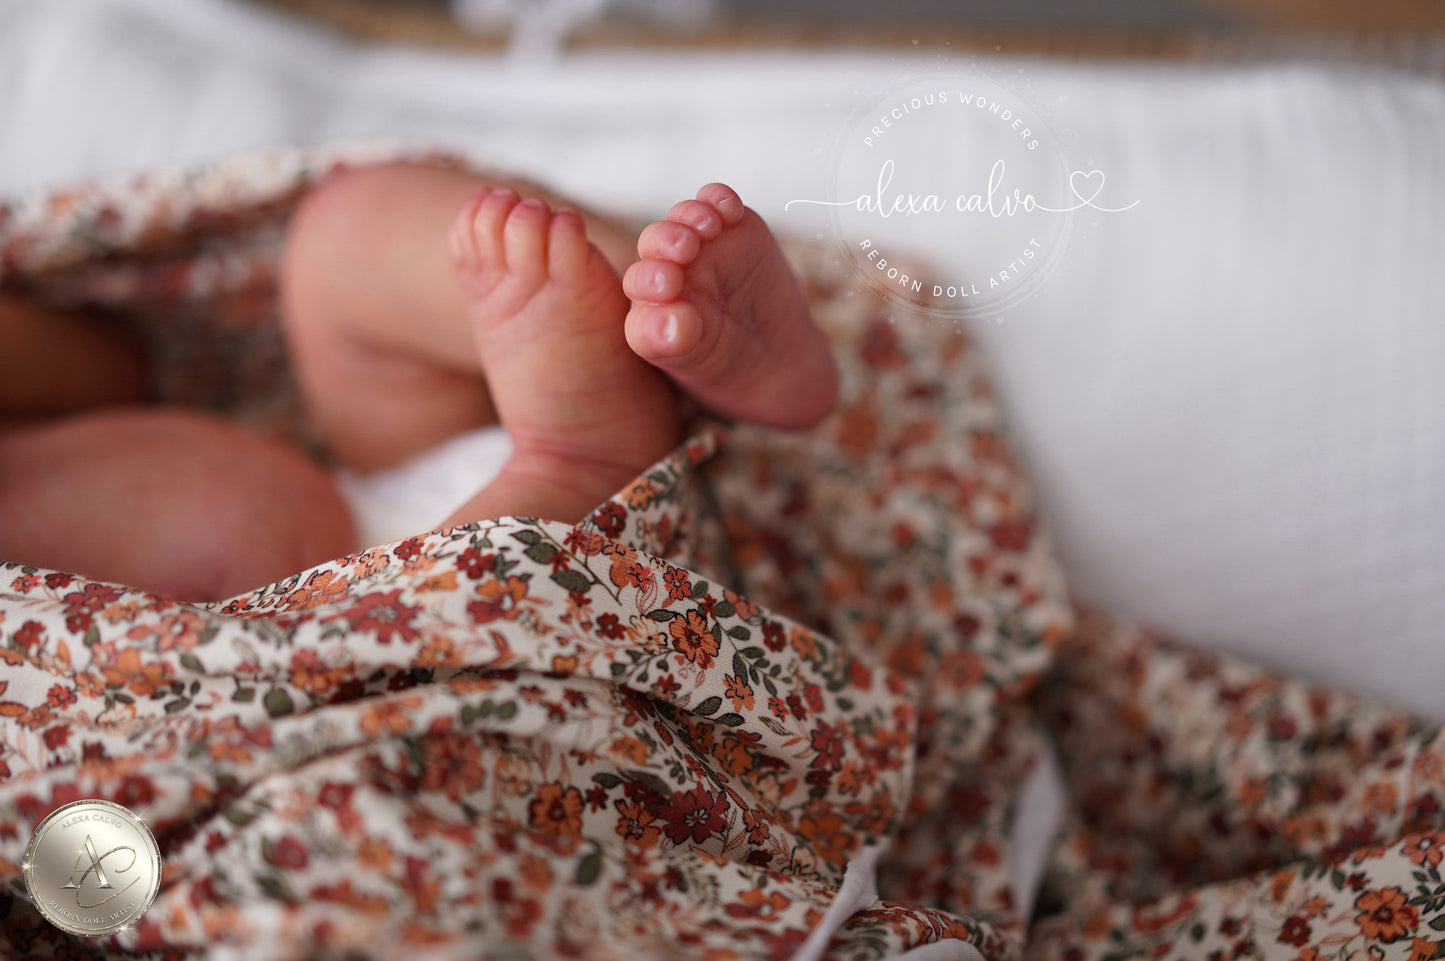 Baby Orla – Prototyp von Sabine Altenkirch, wiedergeboren von Alexa Calvo 